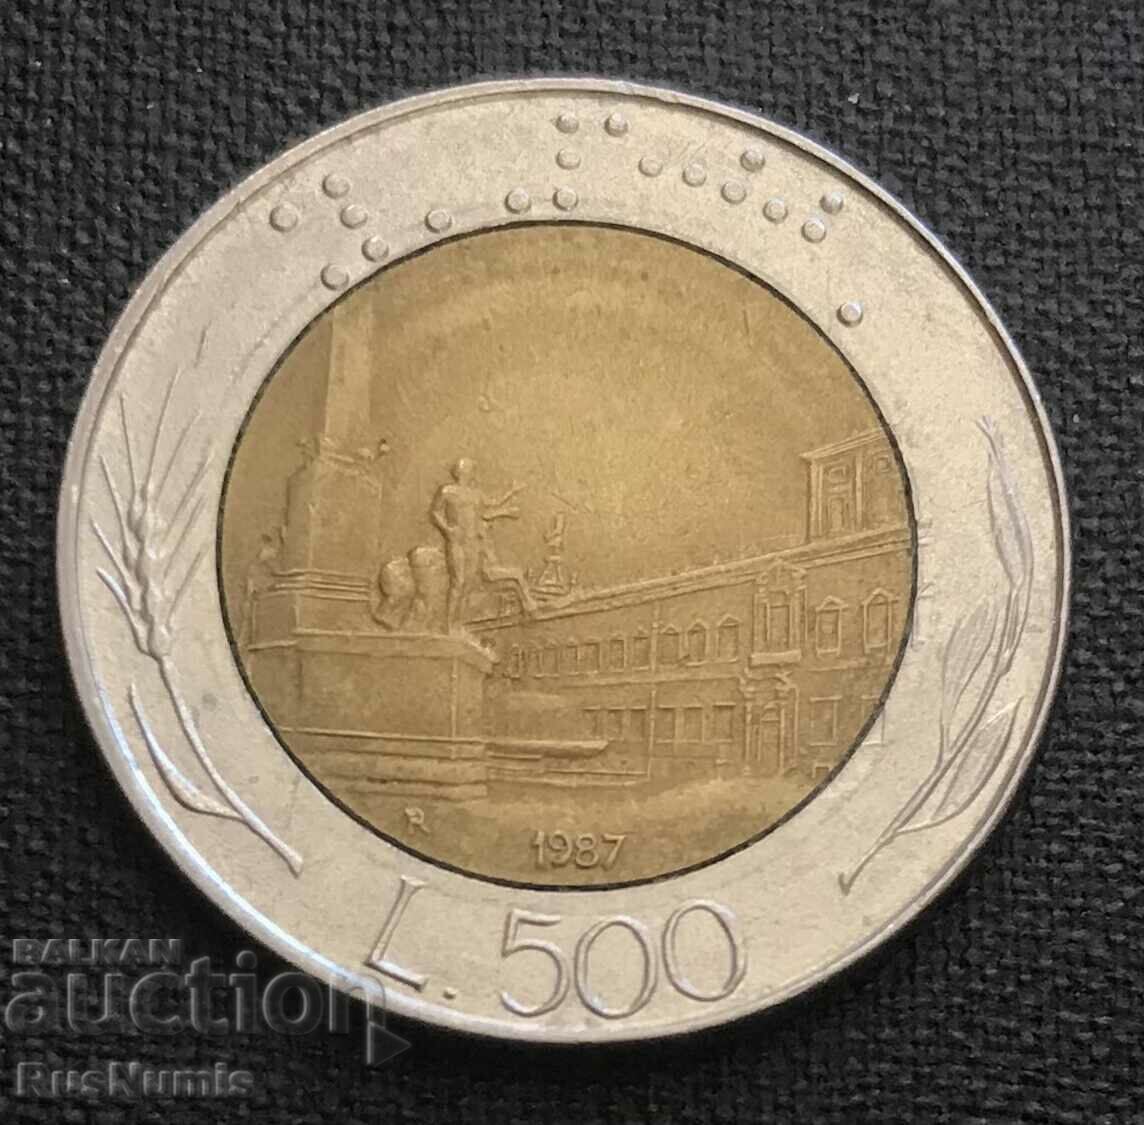 Italy.500 lire 1987.